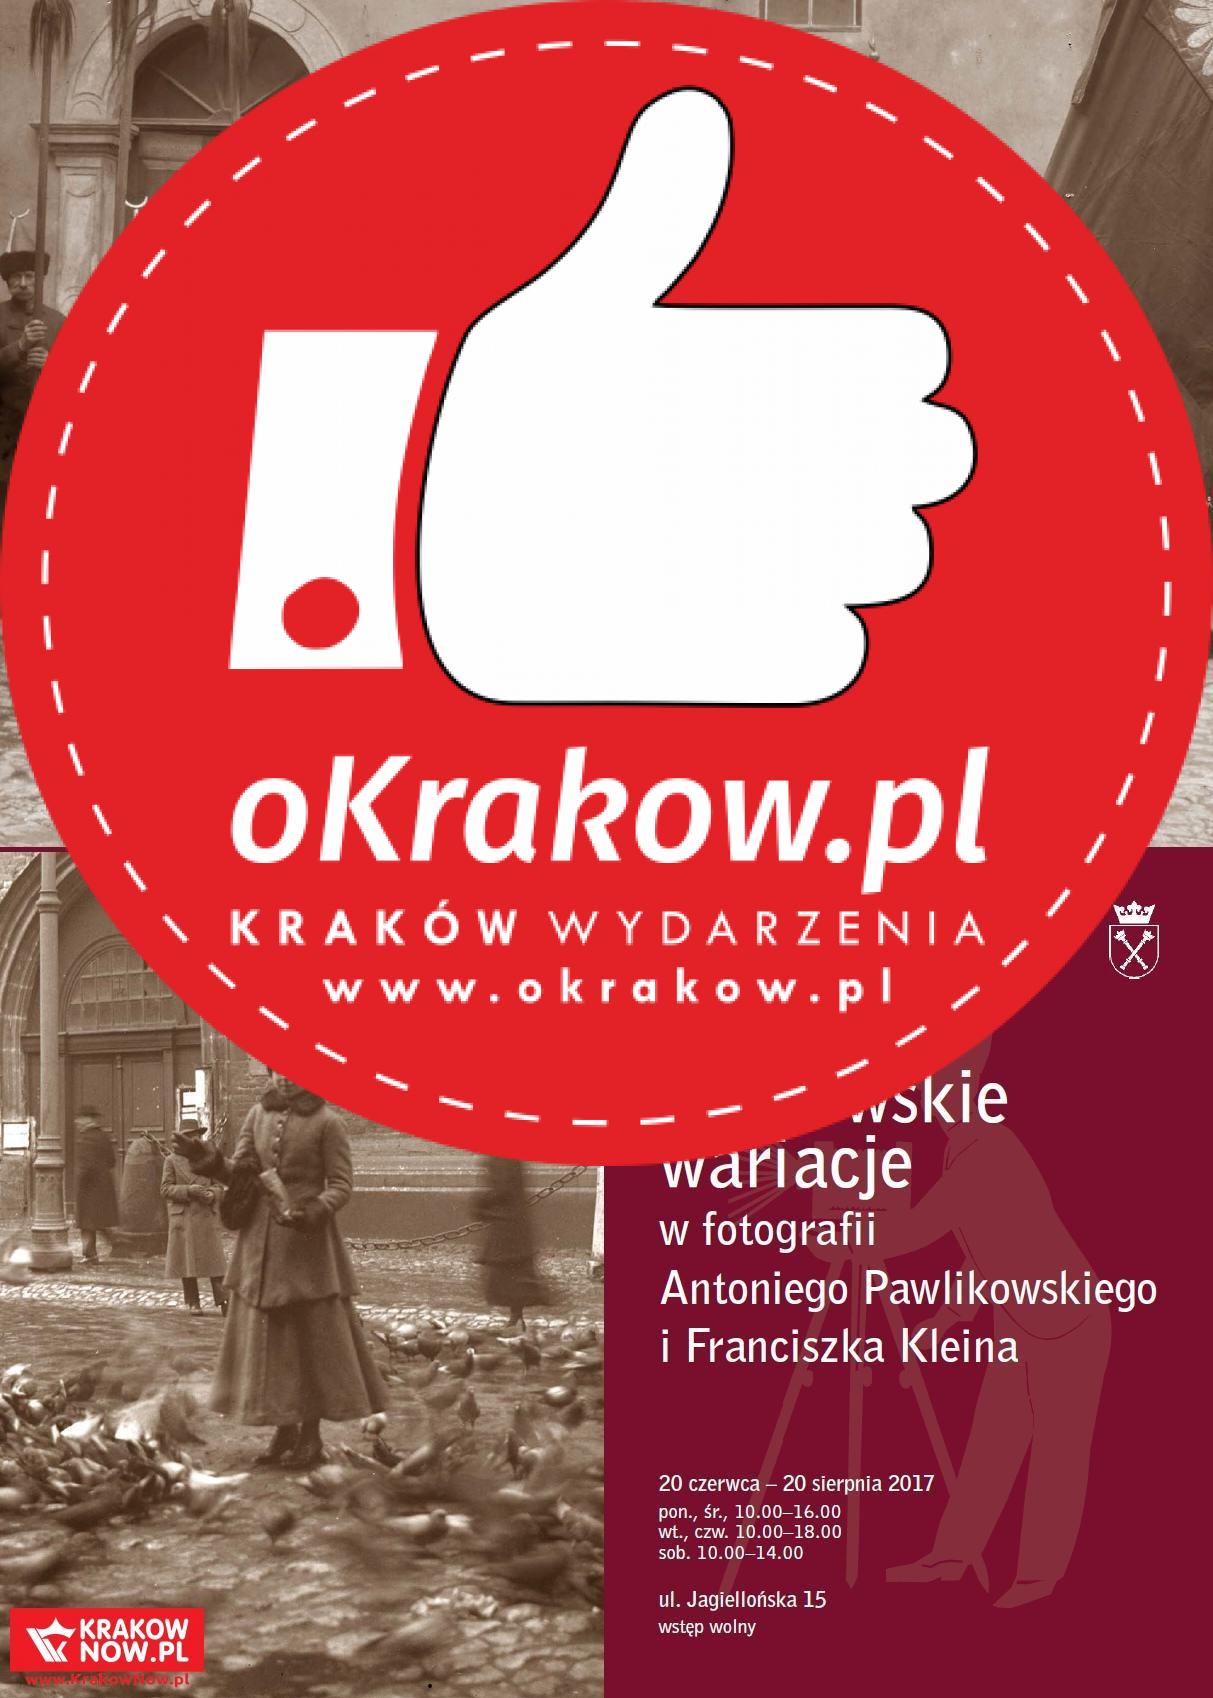 Krakowskie wariacje w fotografii Antoniego Pawlikowskiego i Franciszka Kleina